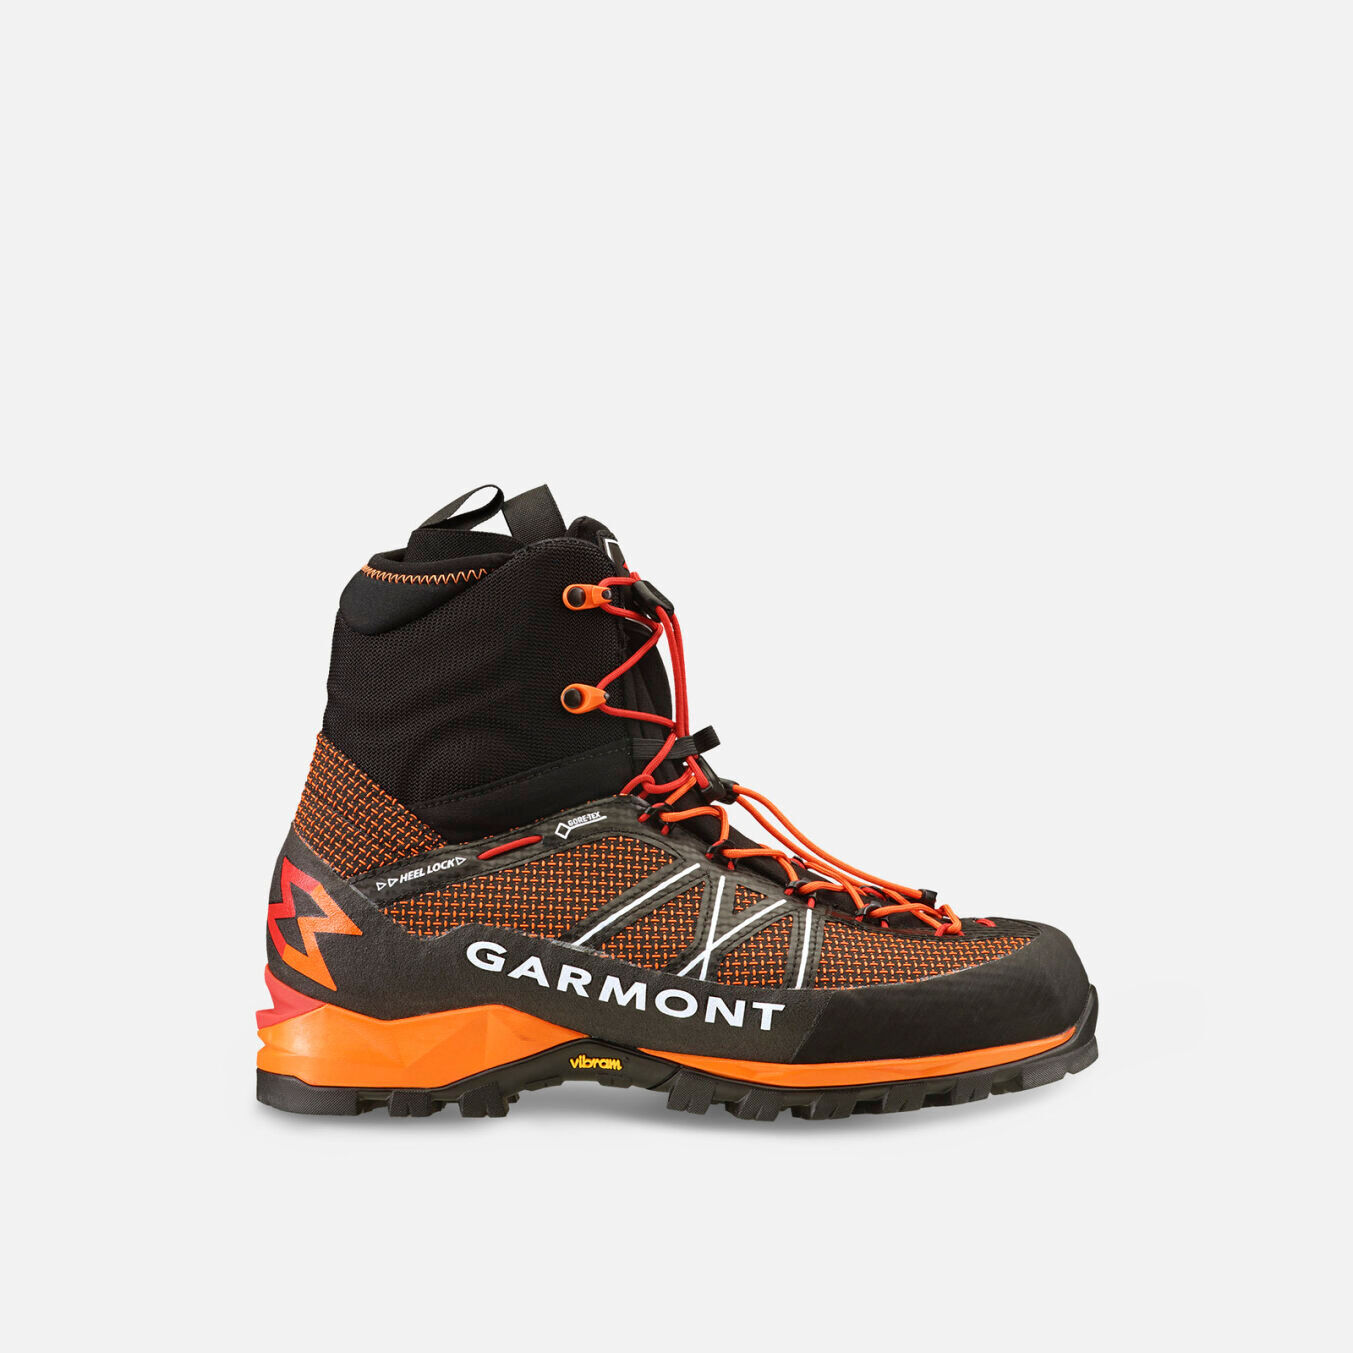 Garmont G-Radikal GTX - Mountaineering Boots - Men's